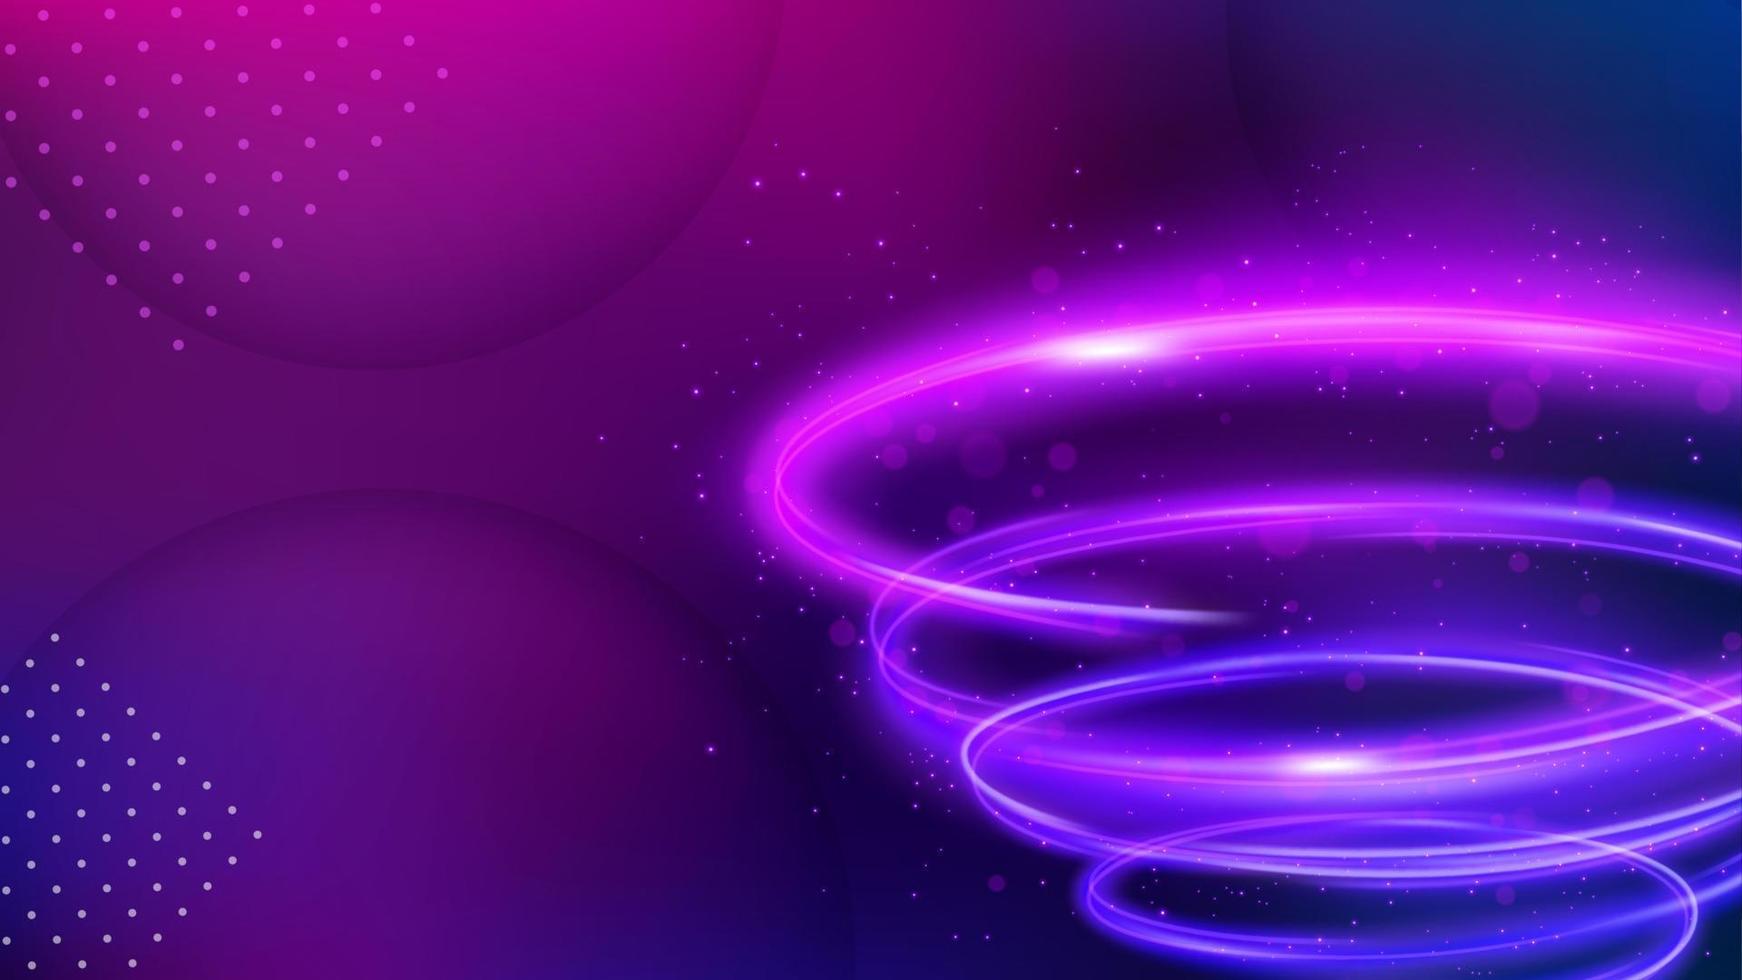 ljus spår bakgrund, elegant violett virvla runt linje korsning. widescreen vektor illustration